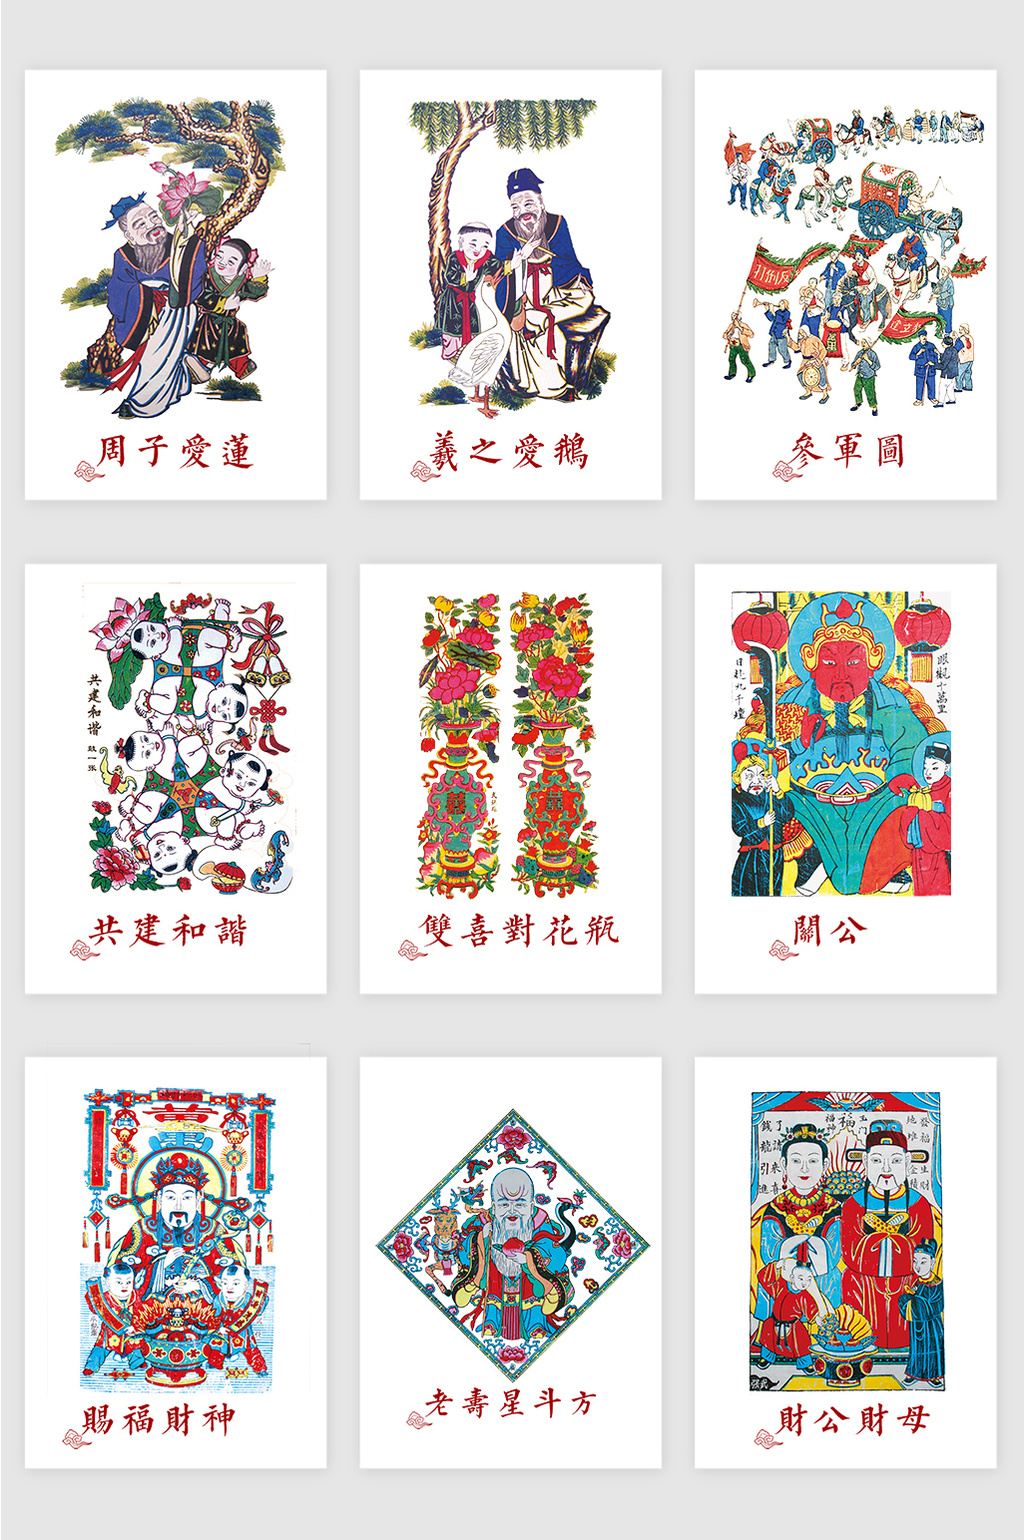 包图 广告设计 手绘卡通 > 中国传统年画插图  上传时间2017-12-04 17